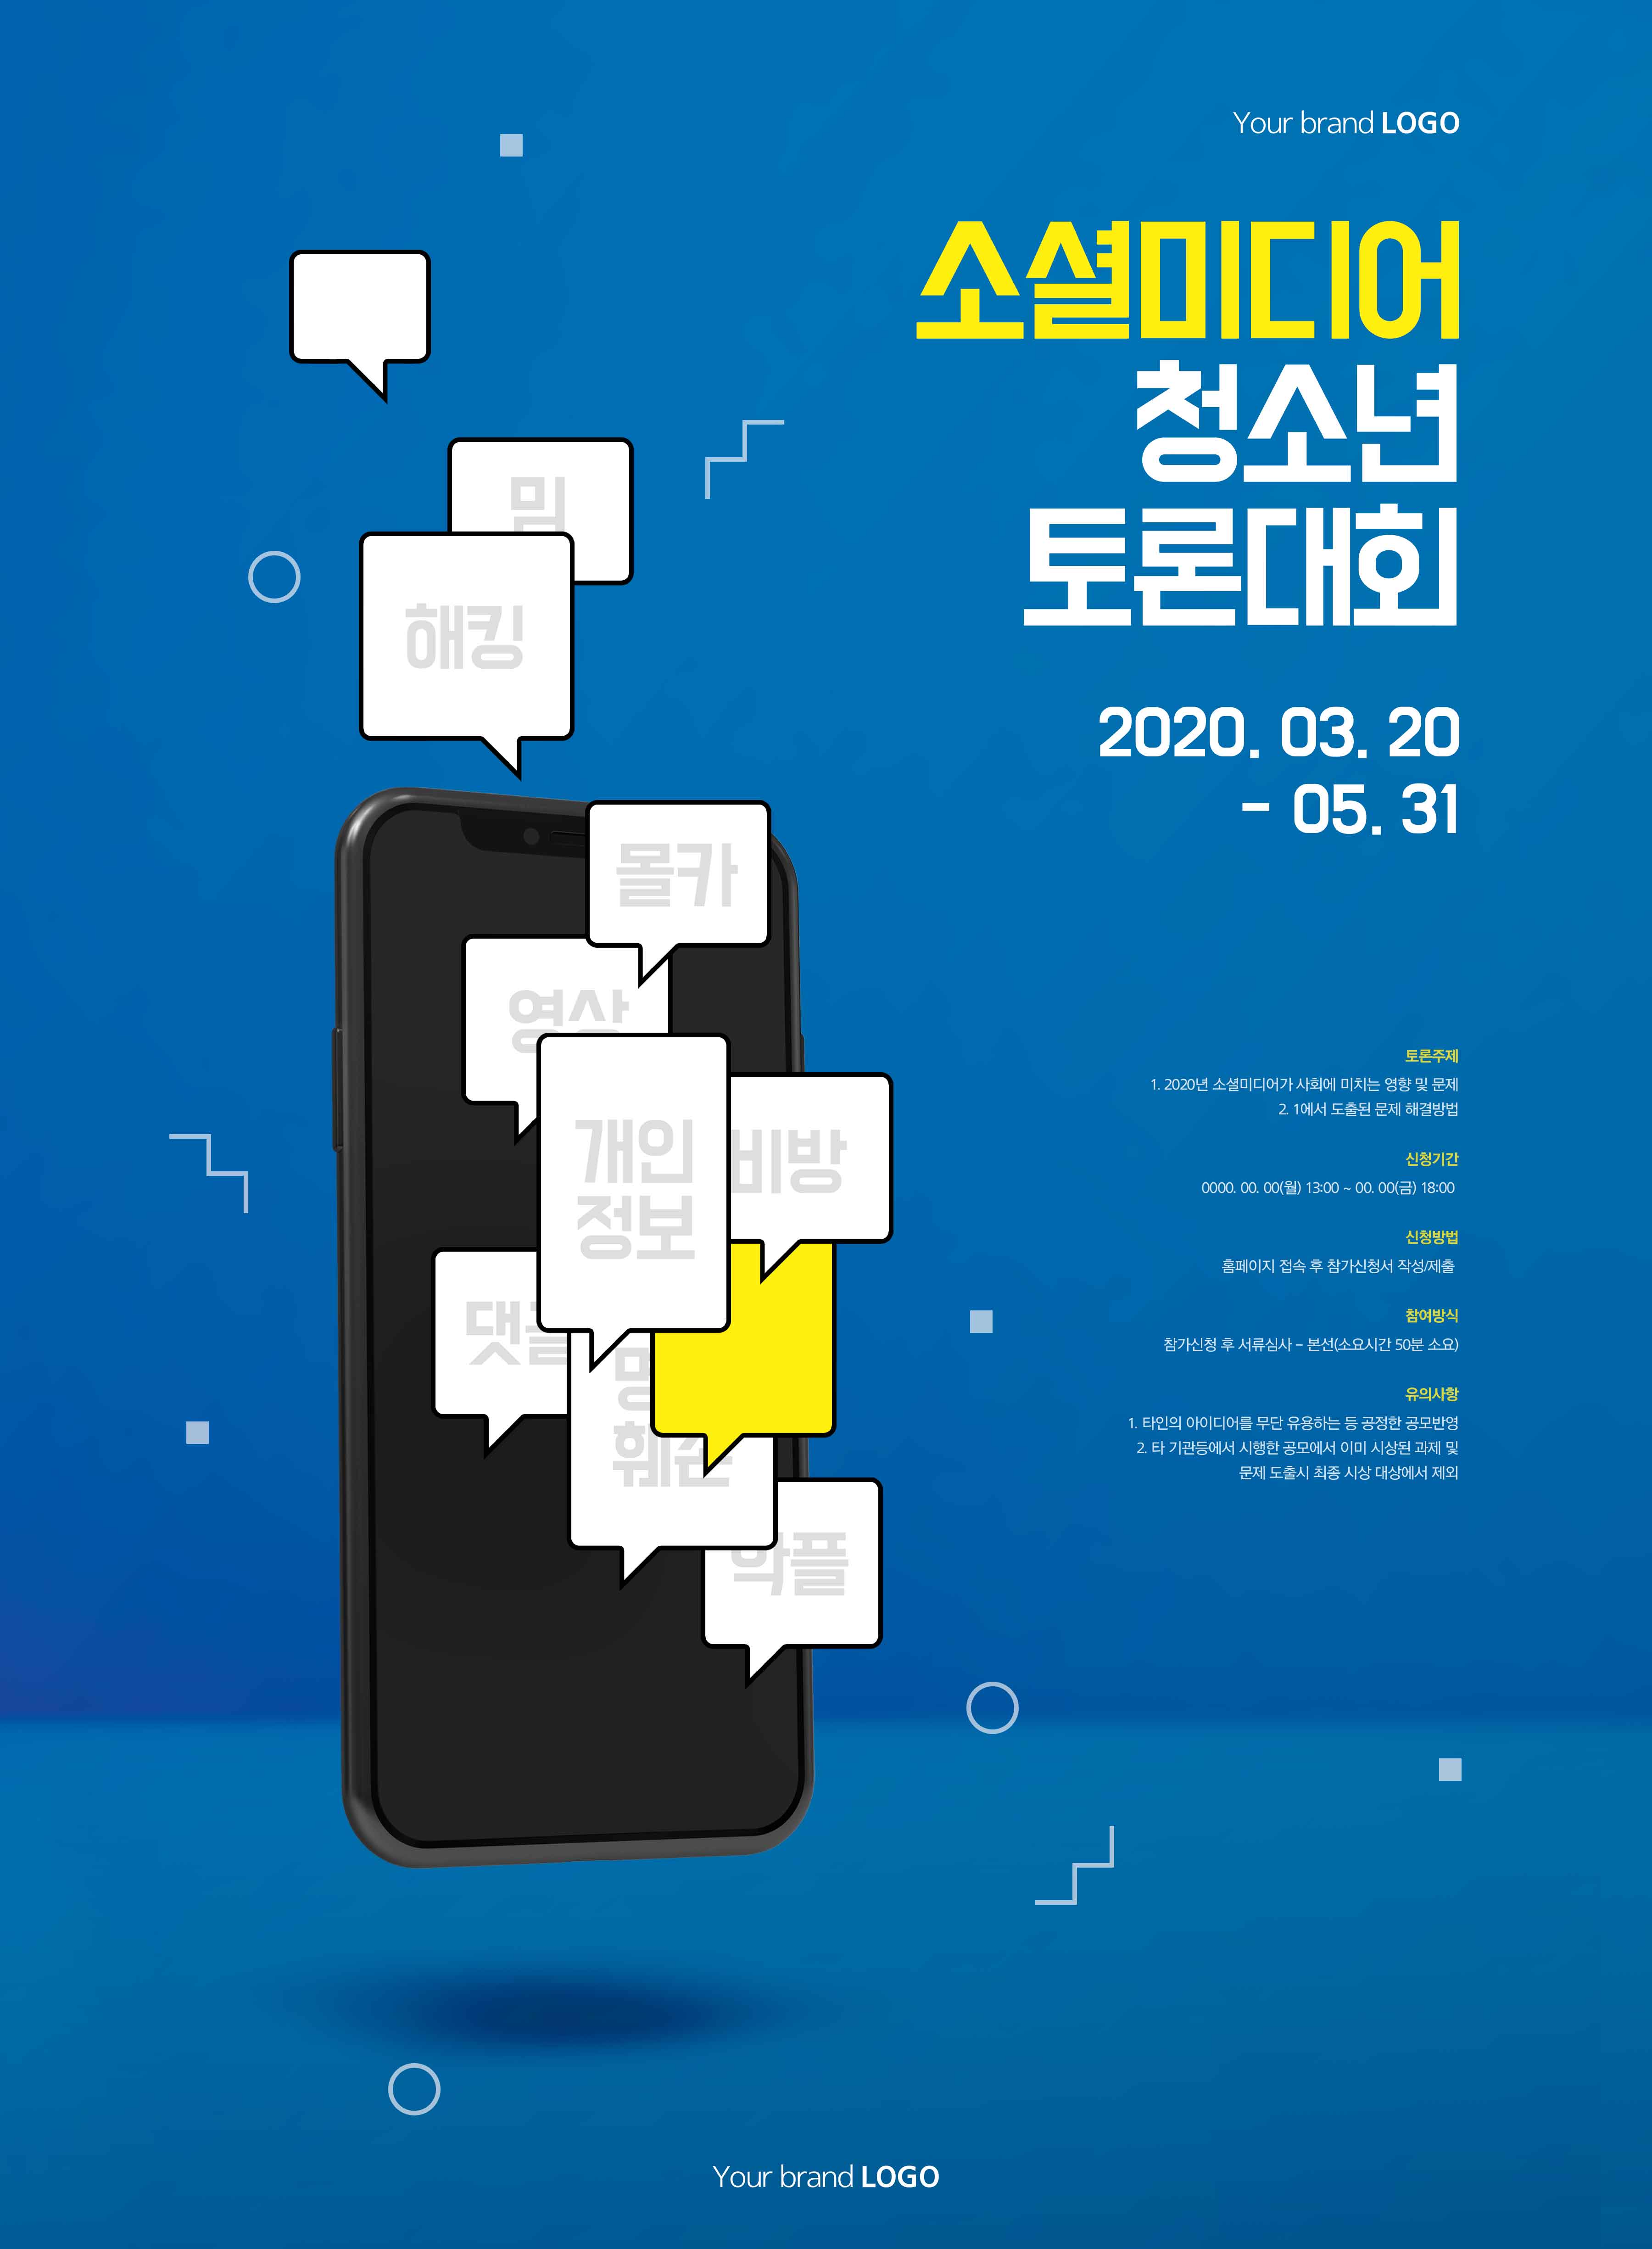 社交辩论比赛活动宣传海报PSD素材大洋岛精选韩国素材插图